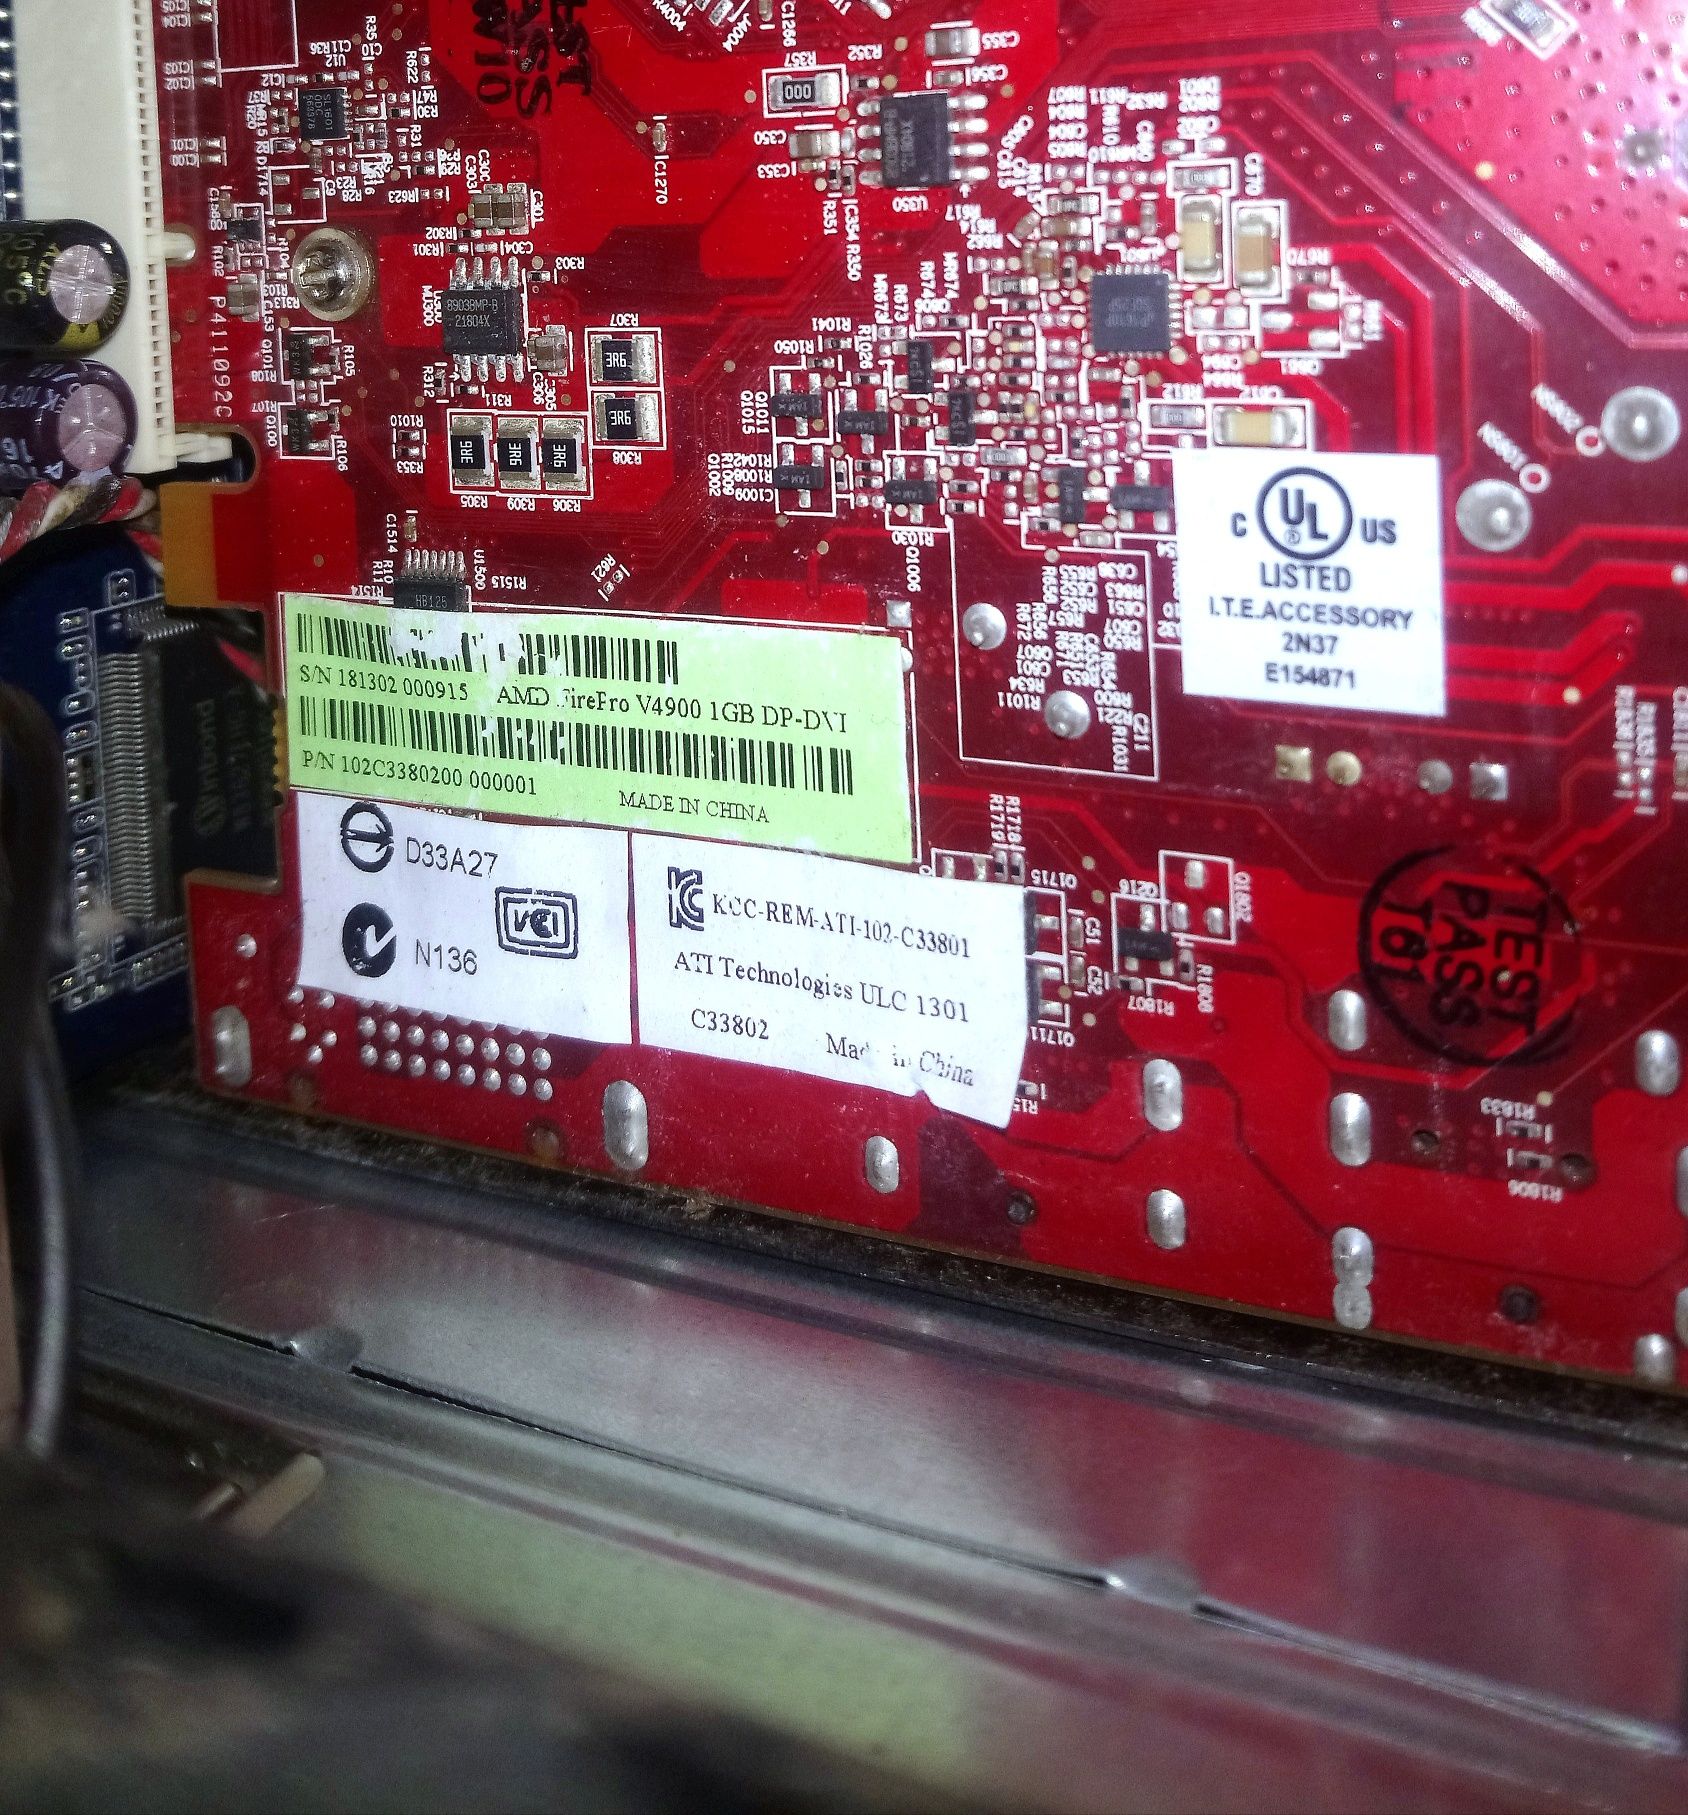 PC desktop - AMD 3 GHz, 2Gb DDR2, HDD 320Gb, DVD, card reader